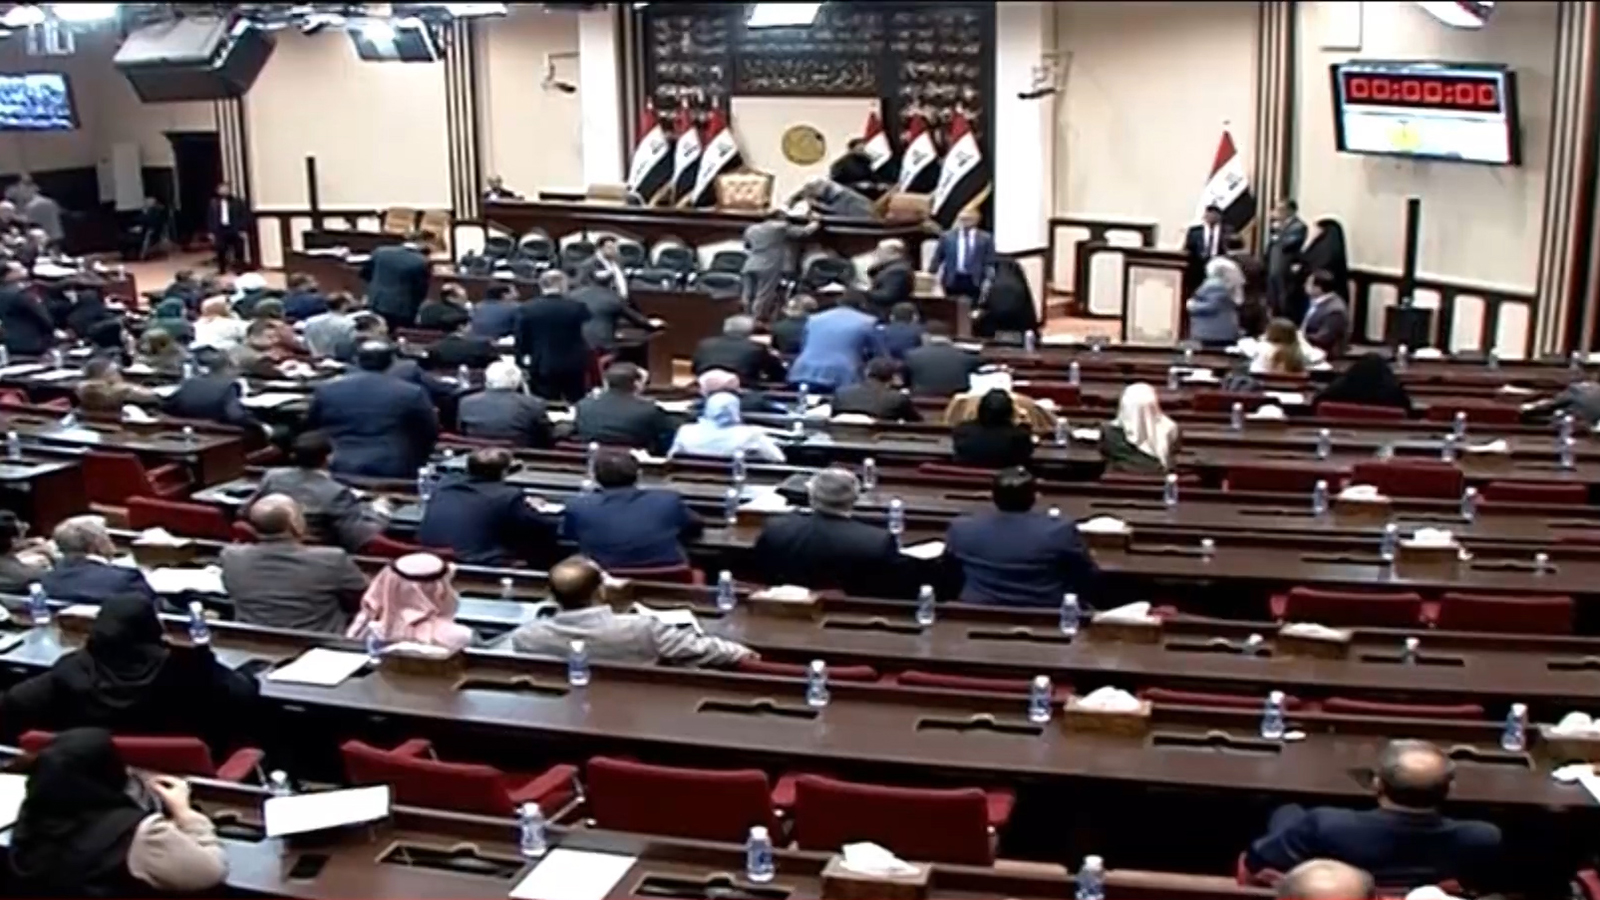 البرلمان العراقي صادق أمس على قرار إخراج القوات الأجنبية من البلاد (الجزيرة)